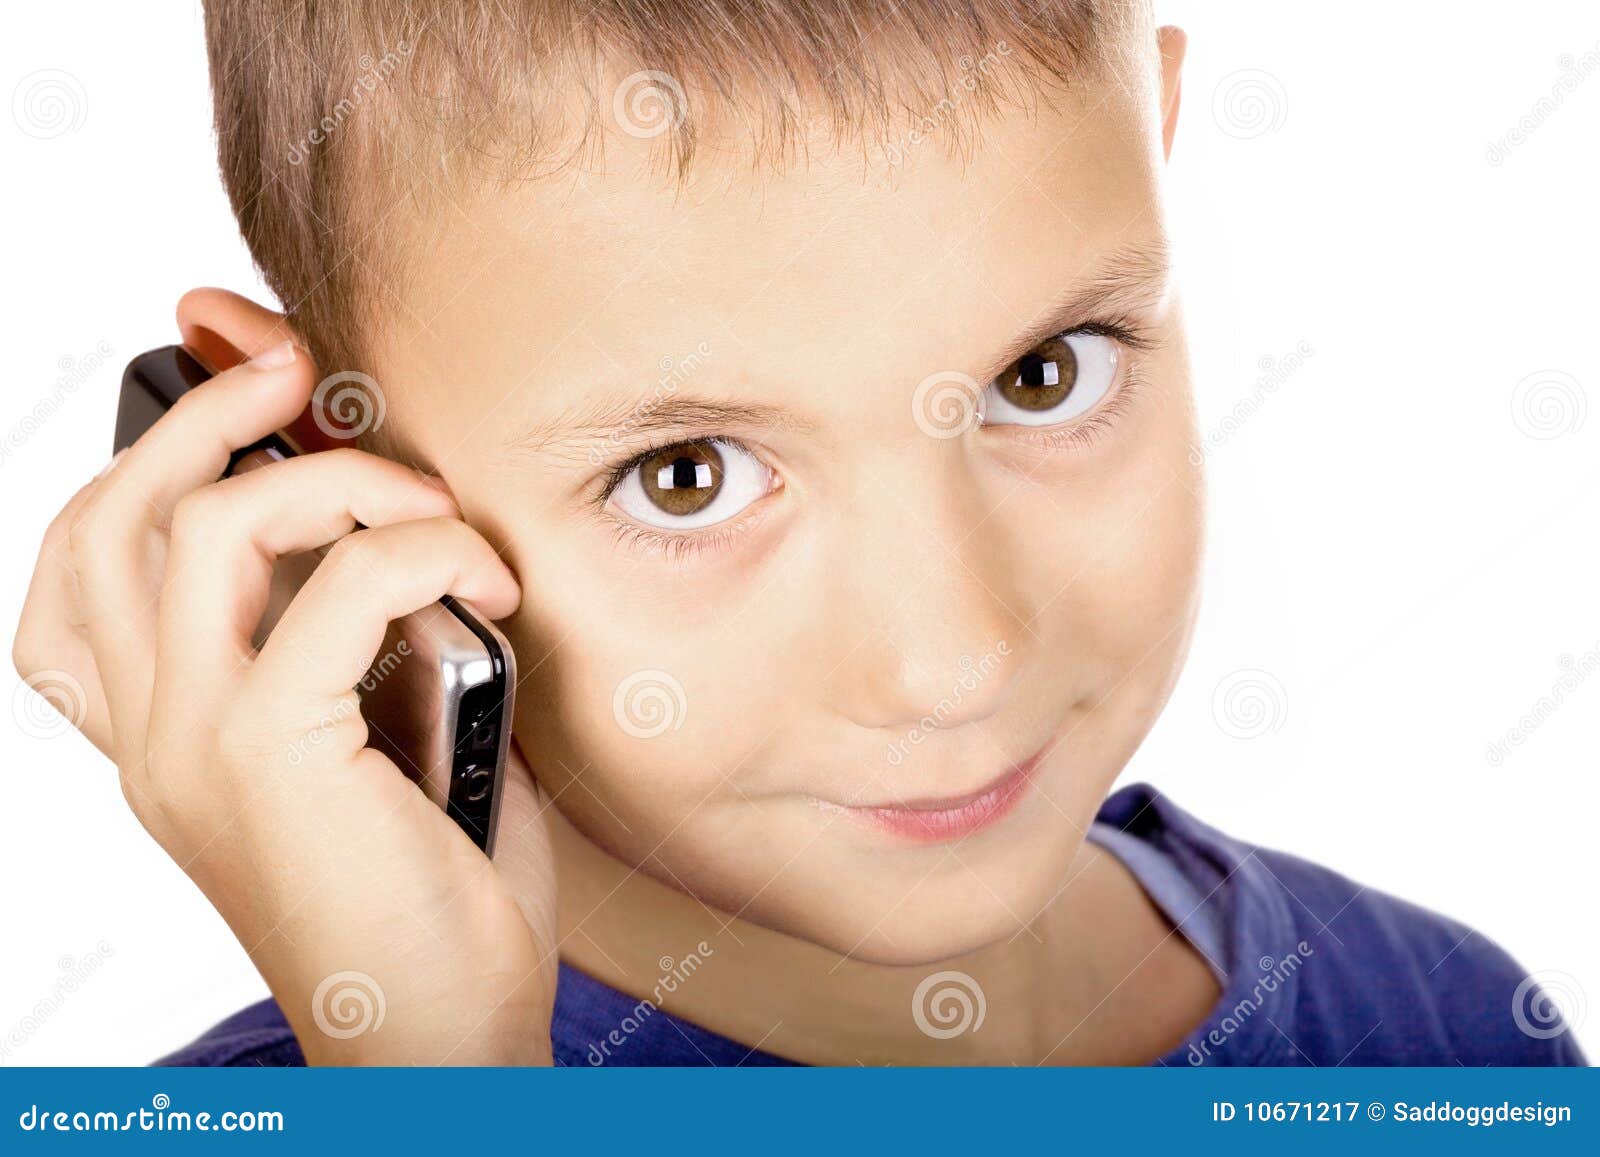 Включи телефон мальчик. Мальчик с телефоном в руке. Папа мальчик с телефоном. Картинка новый телефон у мальчика. Колючка мальчик с телефоном.